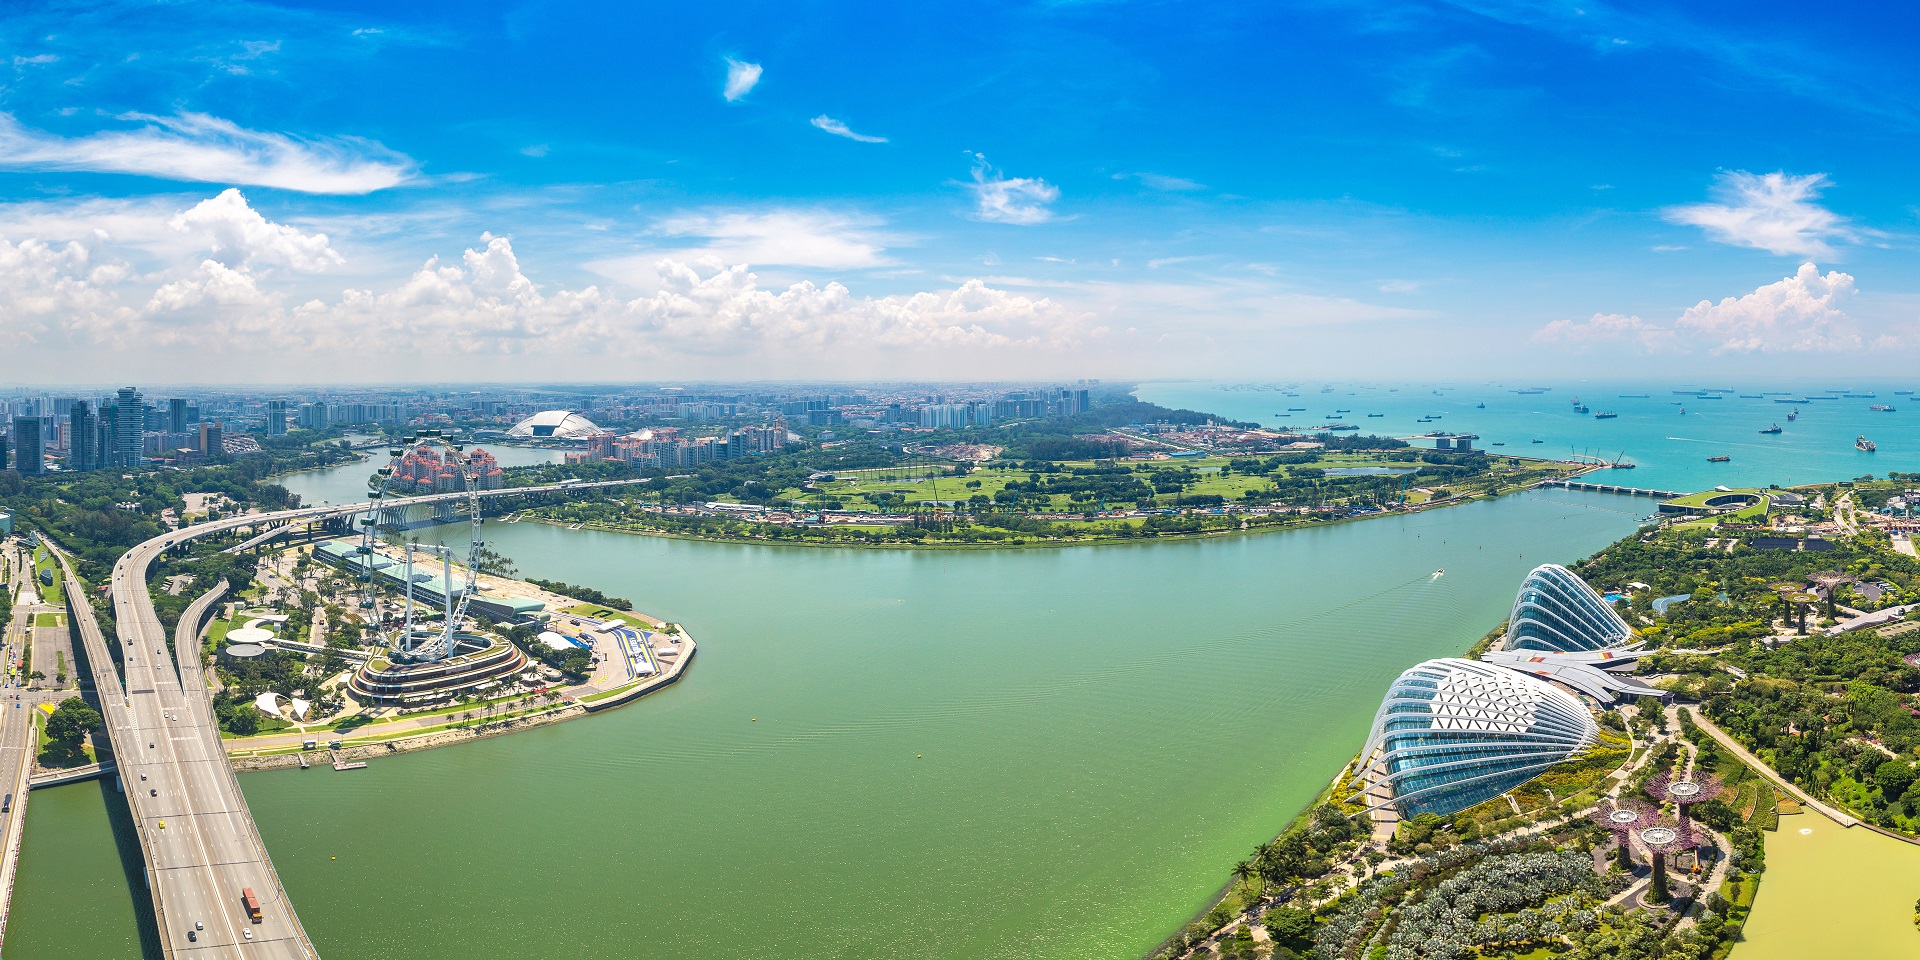 City skyline of Singapore